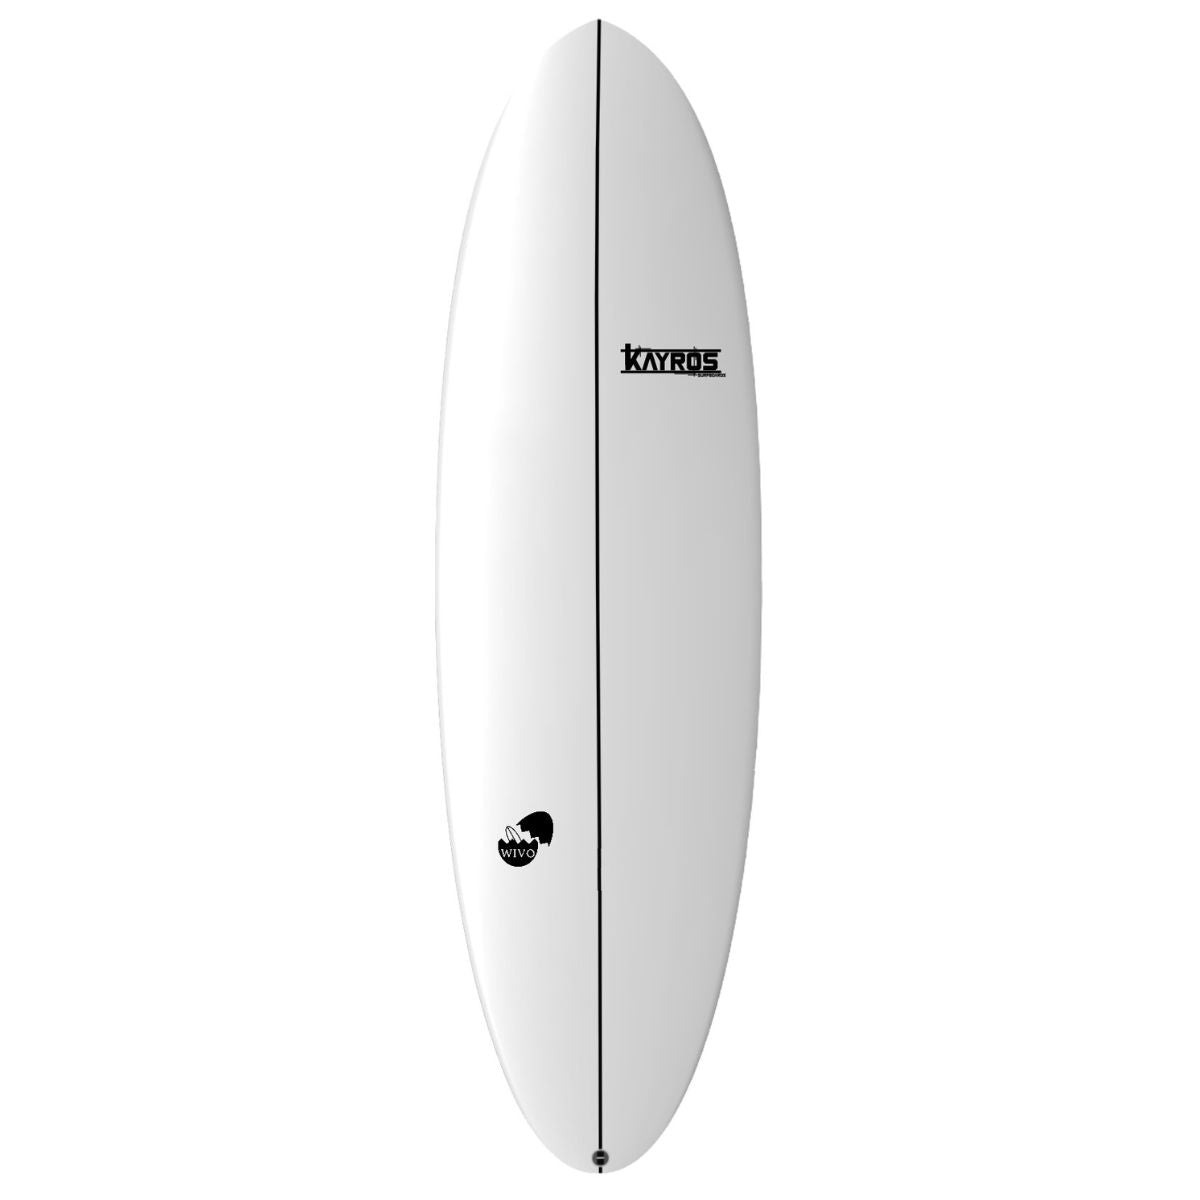 Wivo | Kayros Surfboards